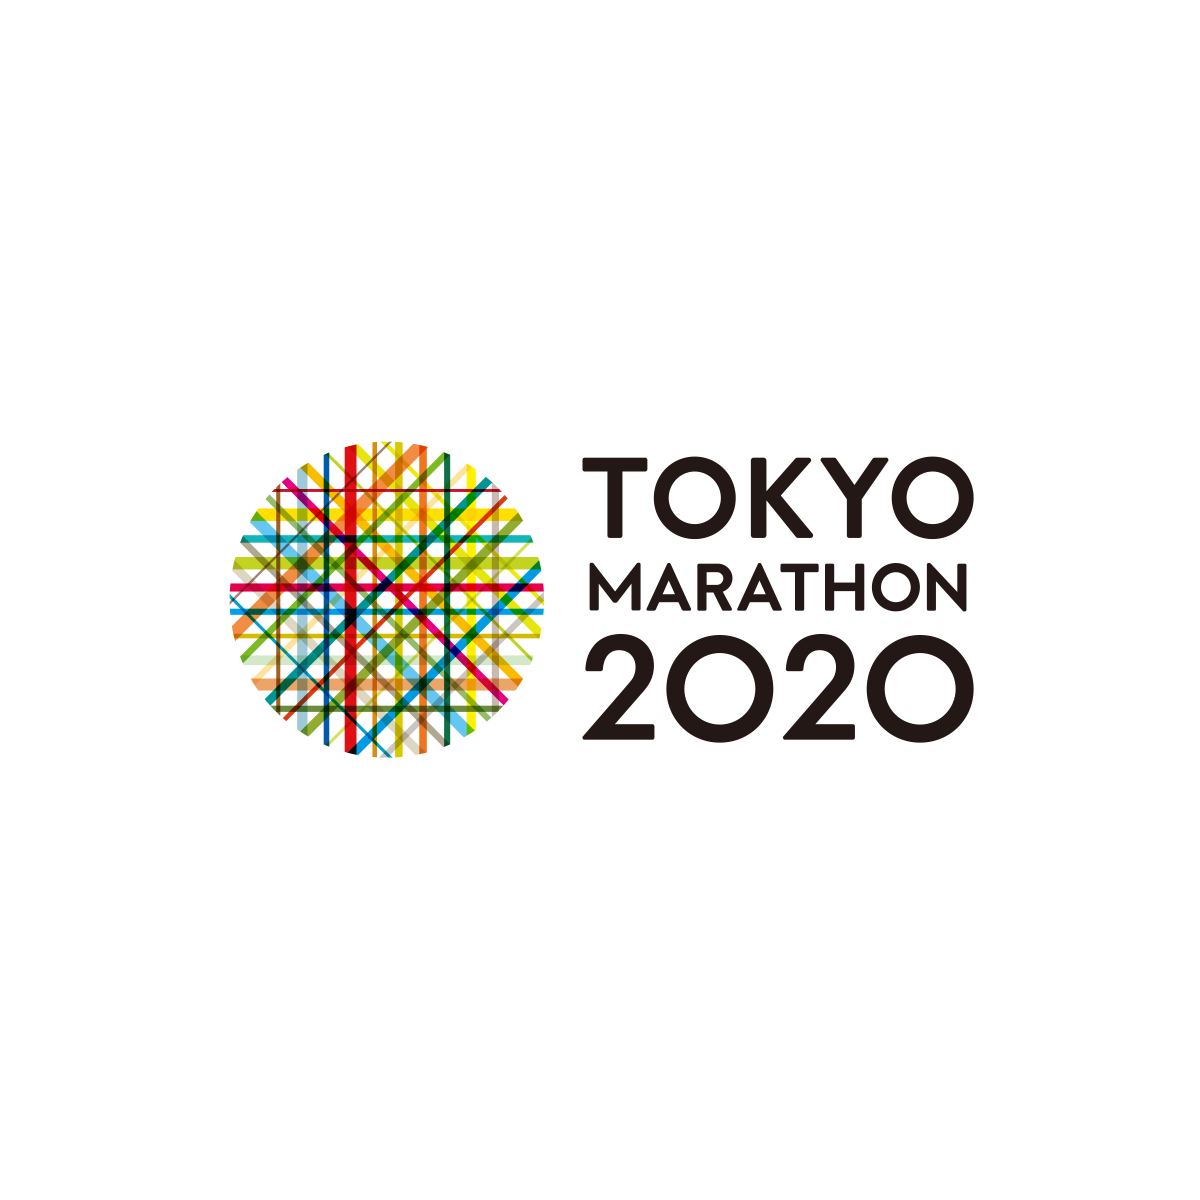 「東京がひとつになる日。」東京マラソン2020の大会公式ウェブサイトです。コースマップ、エントリー情報などご確認いただけます。